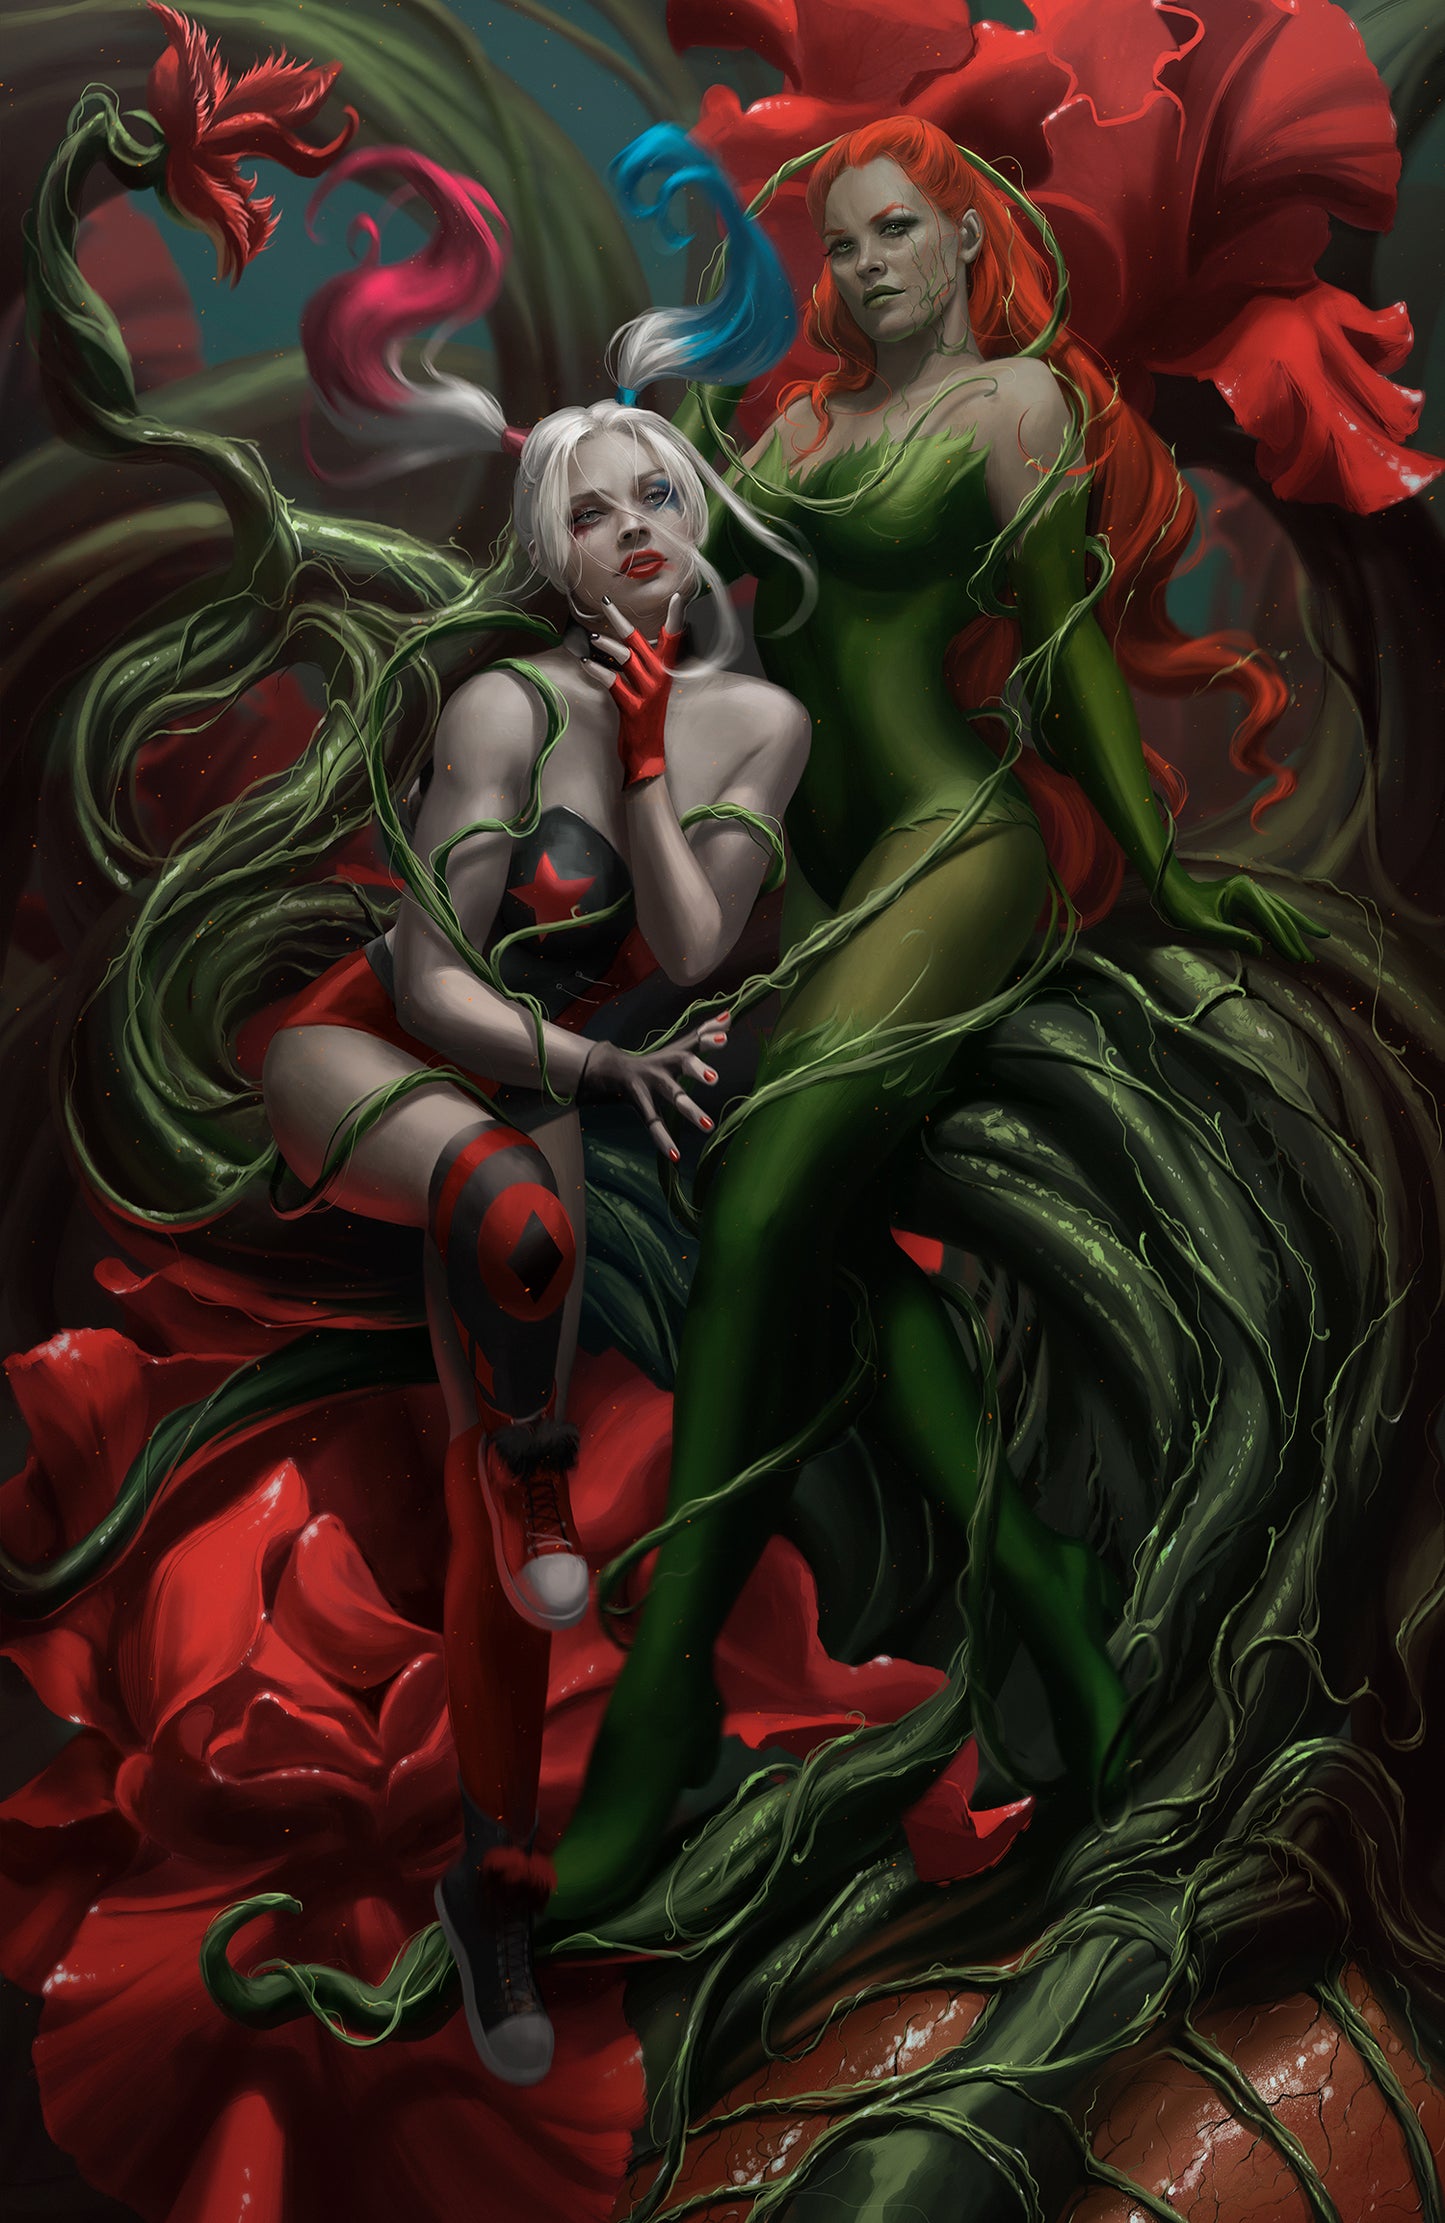 Ann Bembi "Harley Quinn and Poison Ivy"